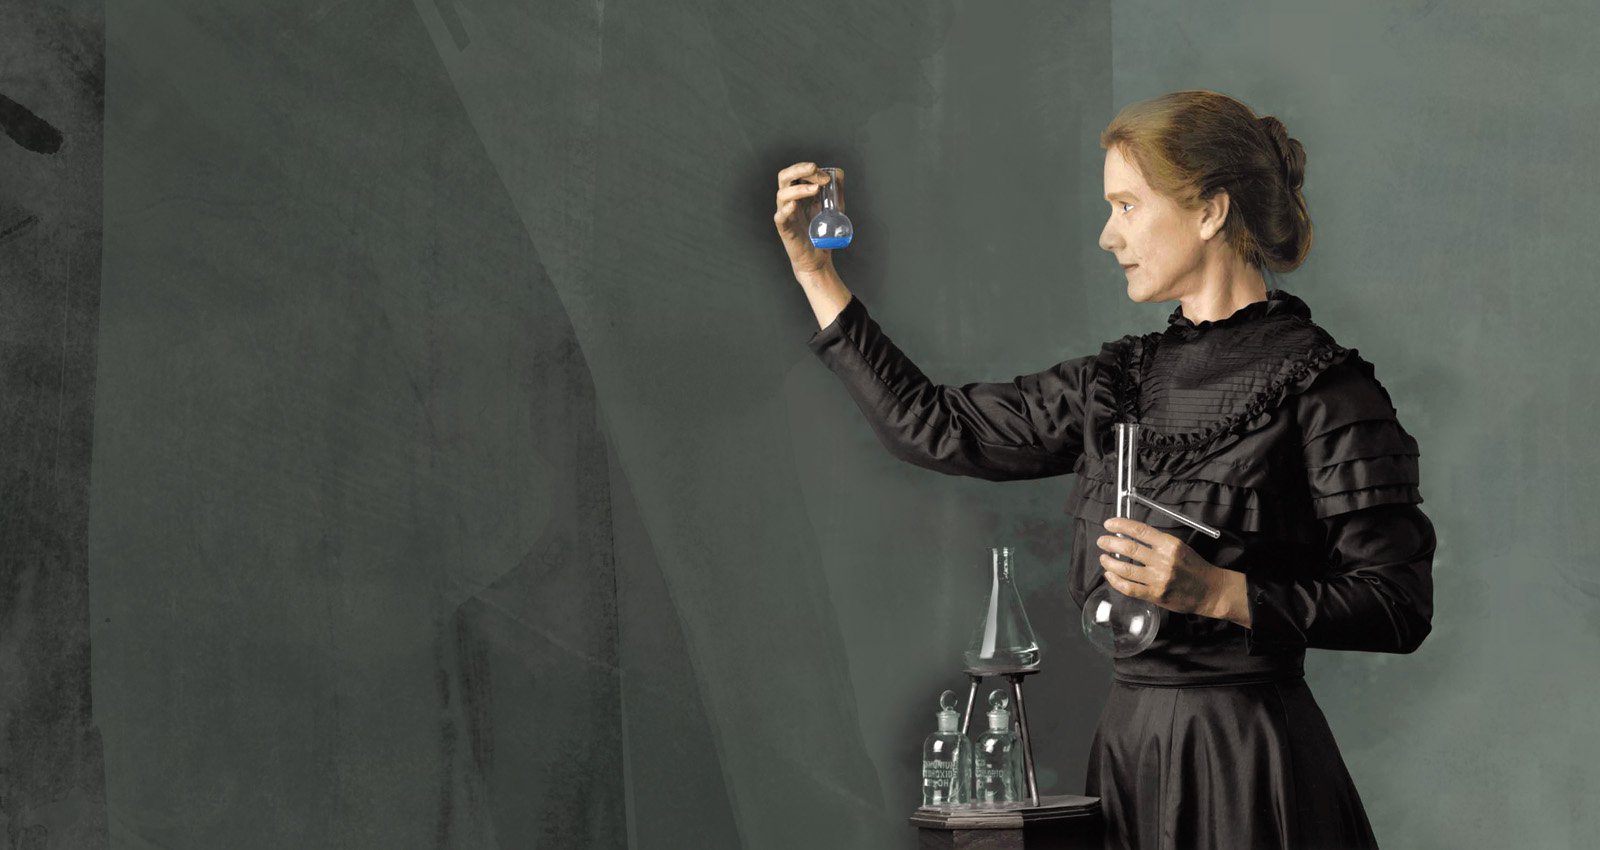 Storia di Marie Curie, la mamma del nucleare (che ha ispirato Einstein)